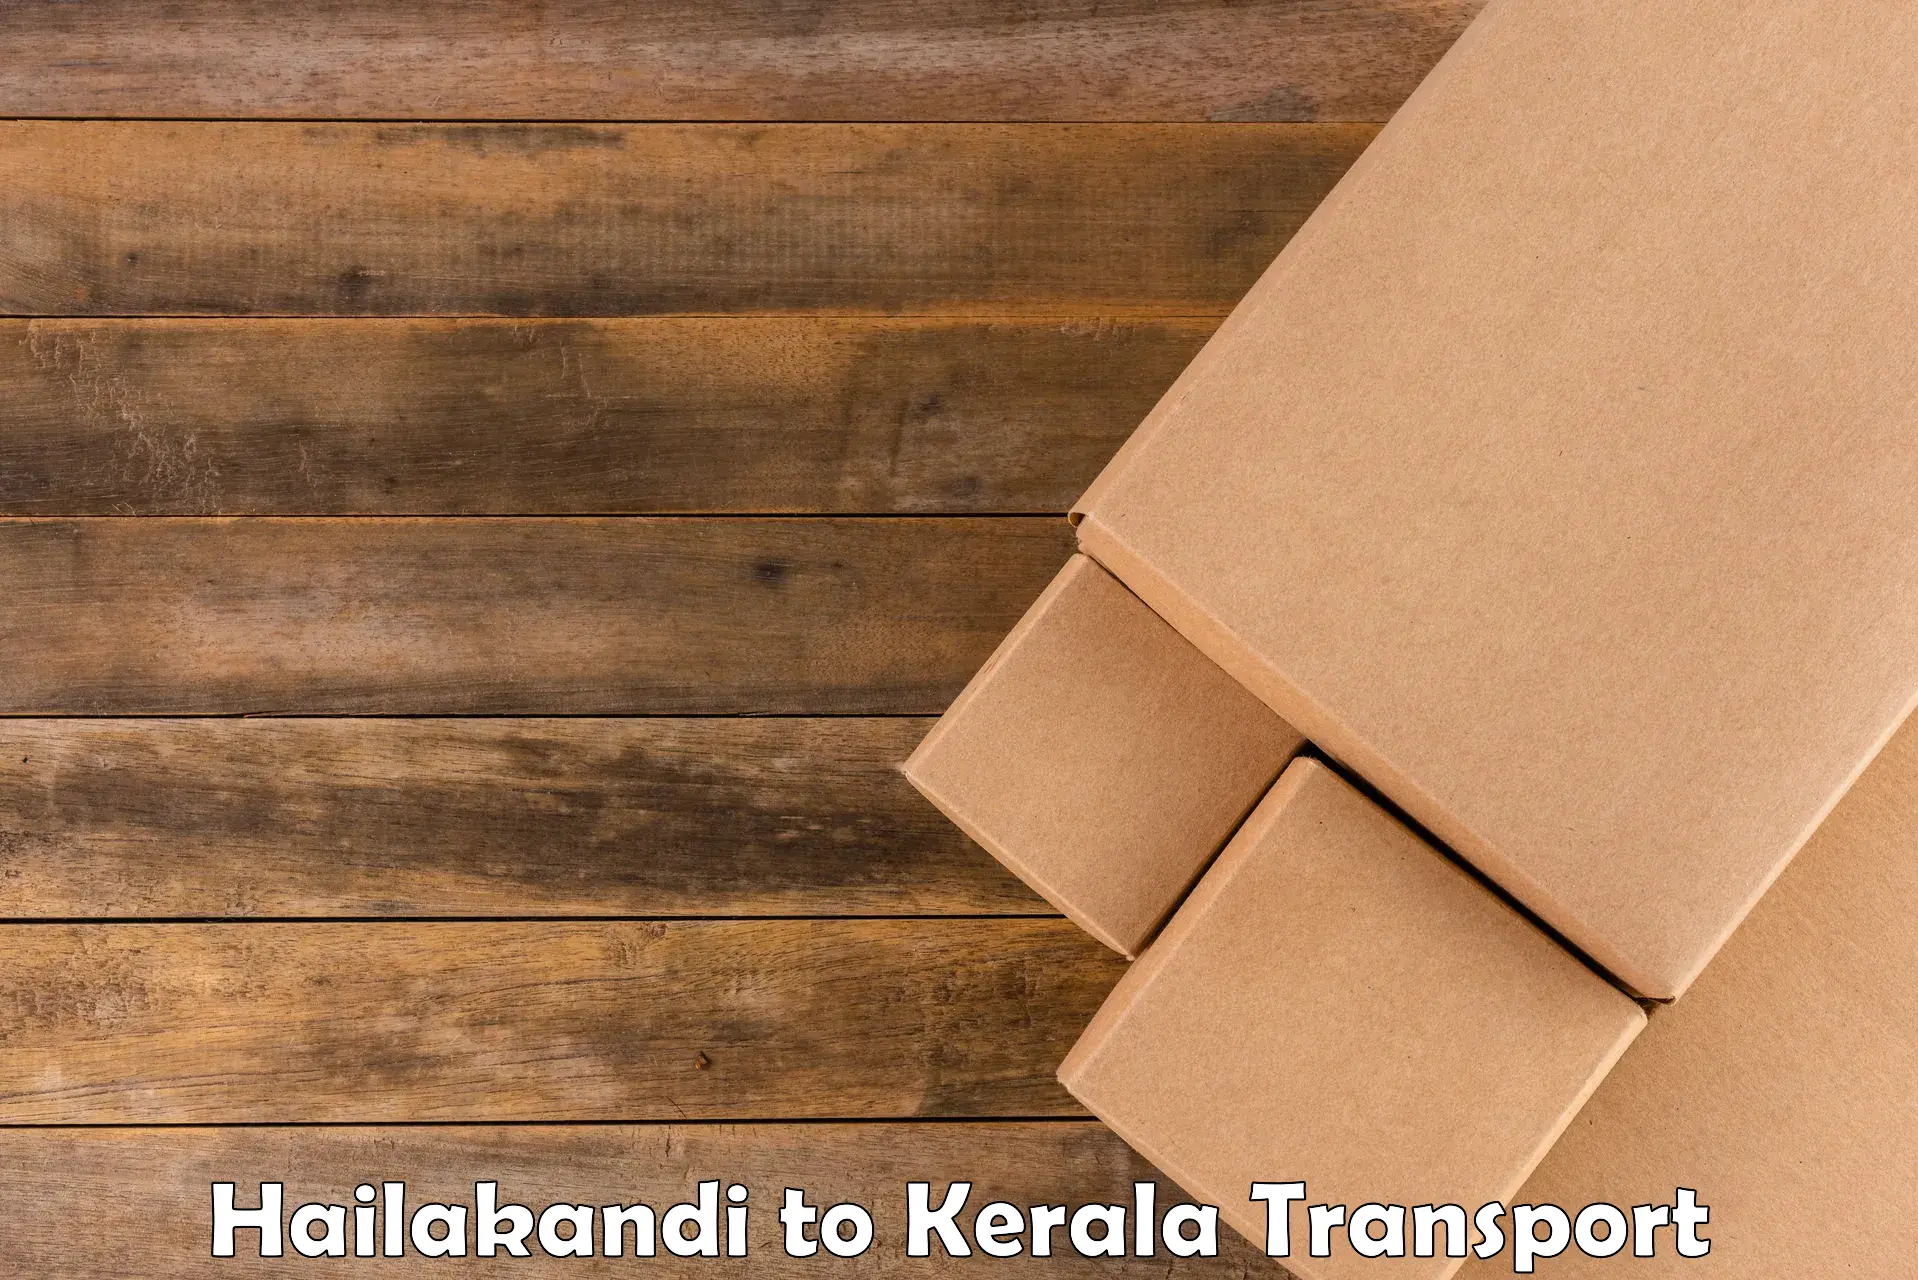 Lorry transport service Hailakandi to Cherthala